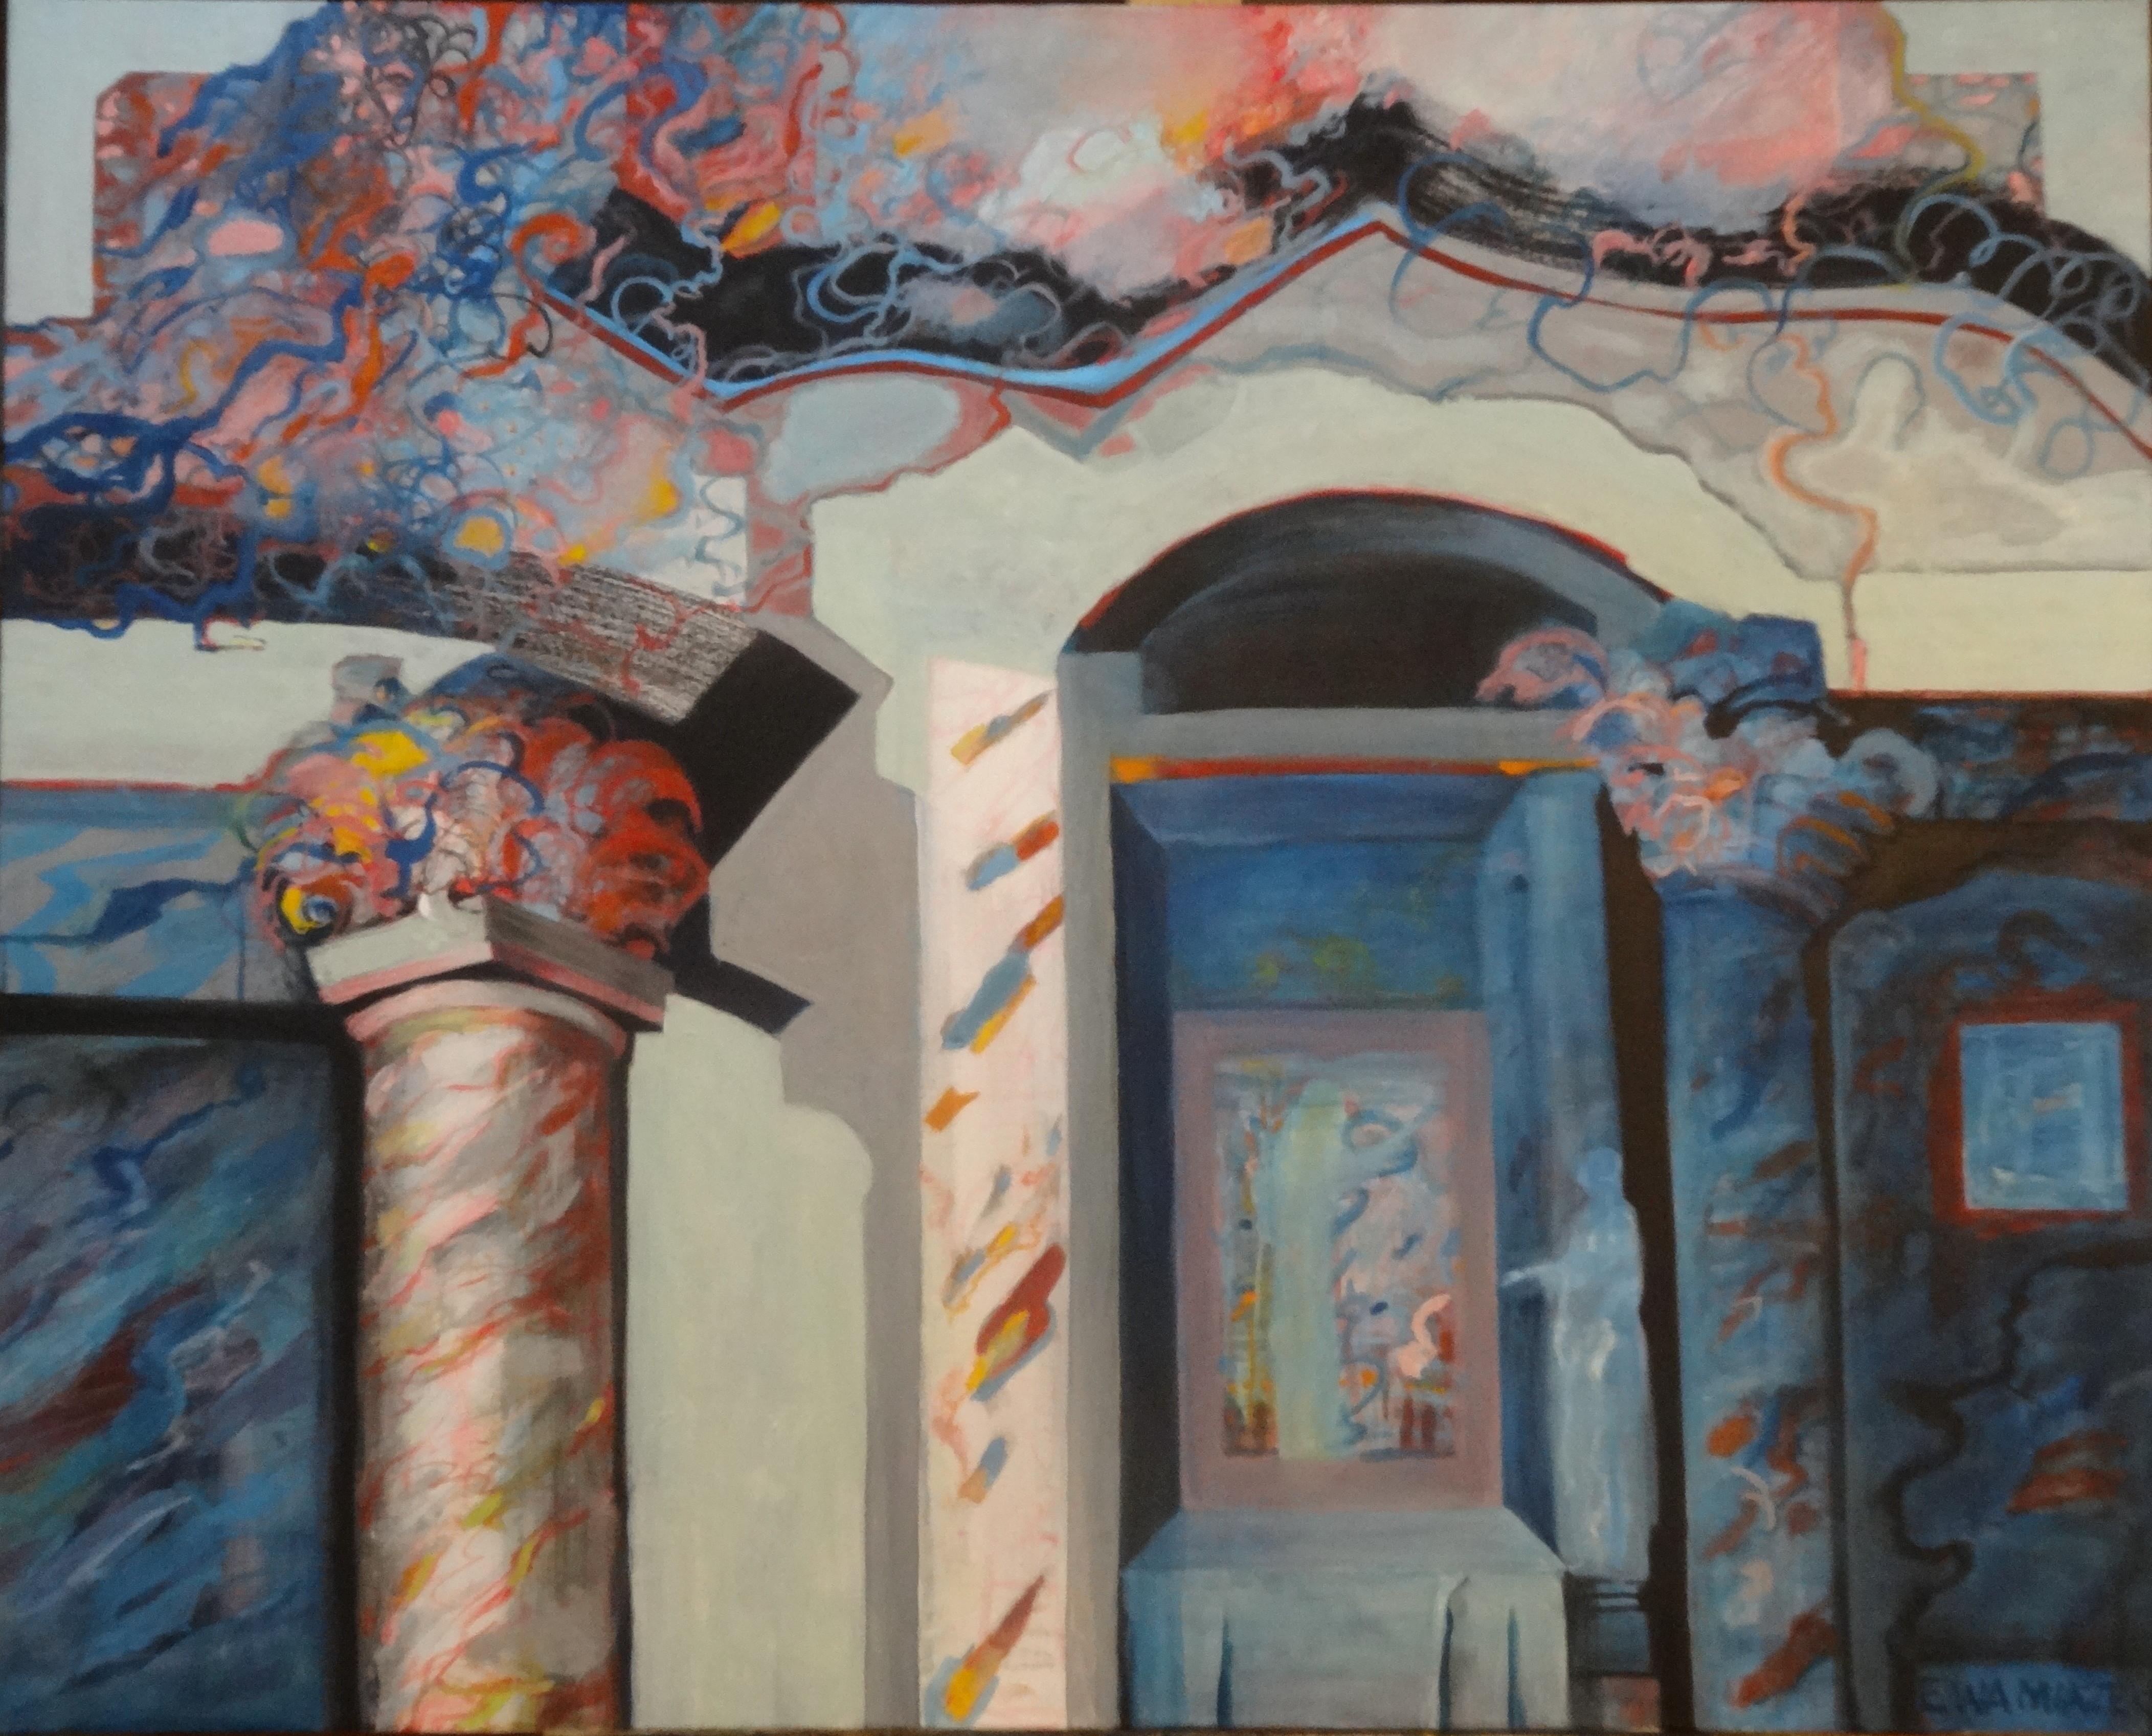 Dieses 31,5" x 39,4" große Gemälde in Acryl auf Leinwand von Ewa Miazek-Mioduszewska zeigt ein abstrahiertes und farbenfrohes architektonisches Interieur des Vilnius-Tempels mit einem Portal und einer stilisierten korinthischen Säule. Die